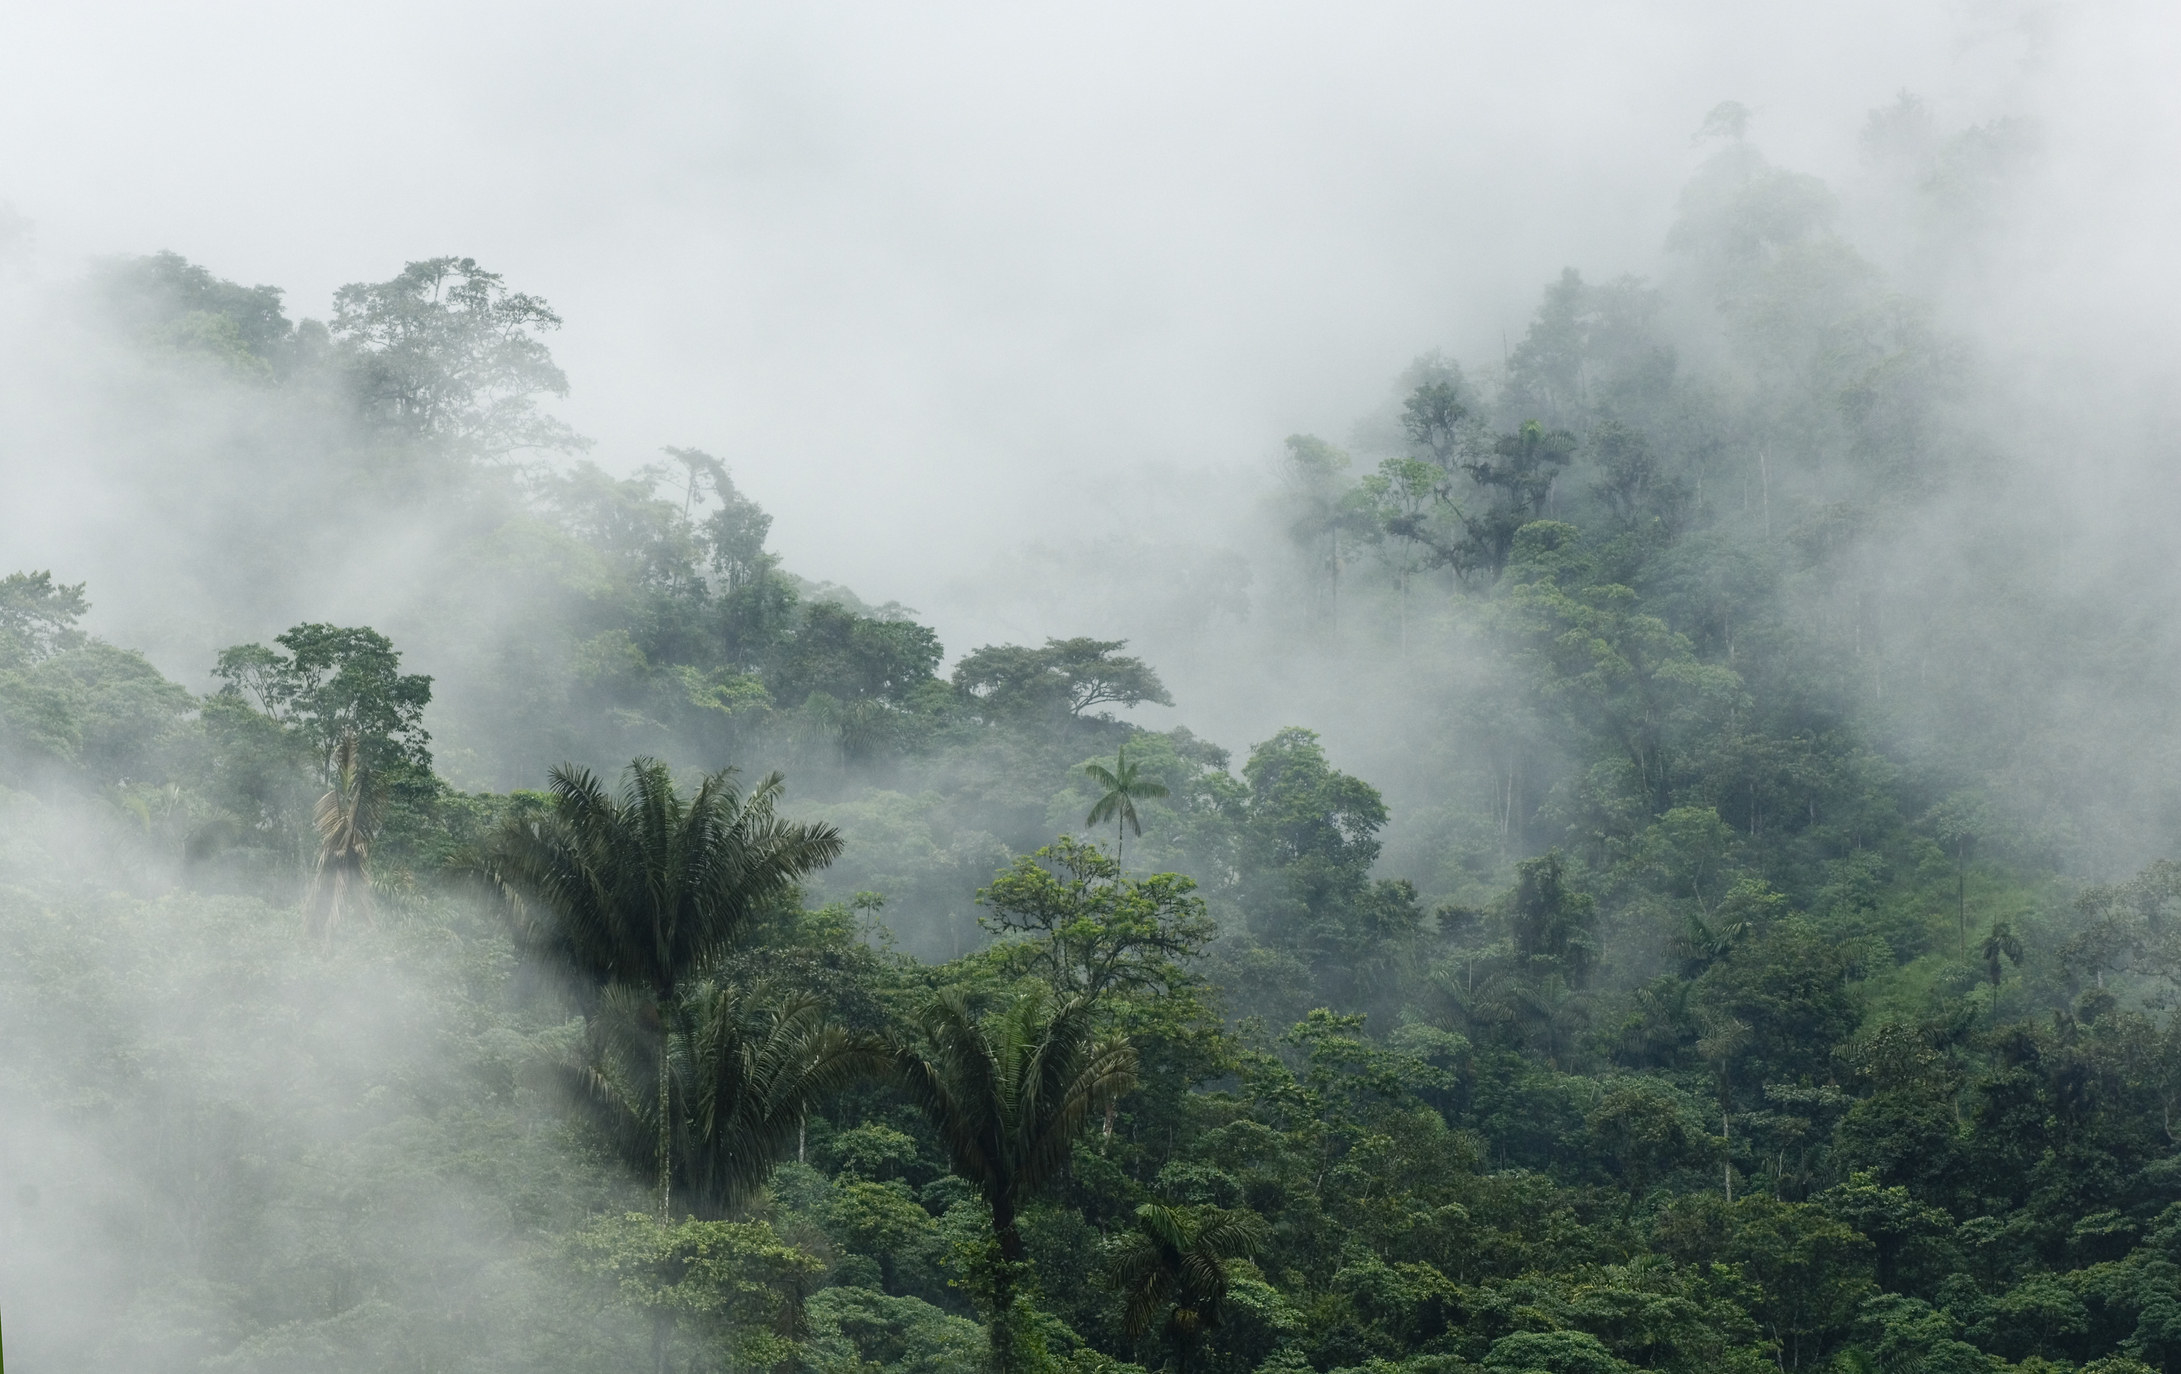 A cloudy rainforest.